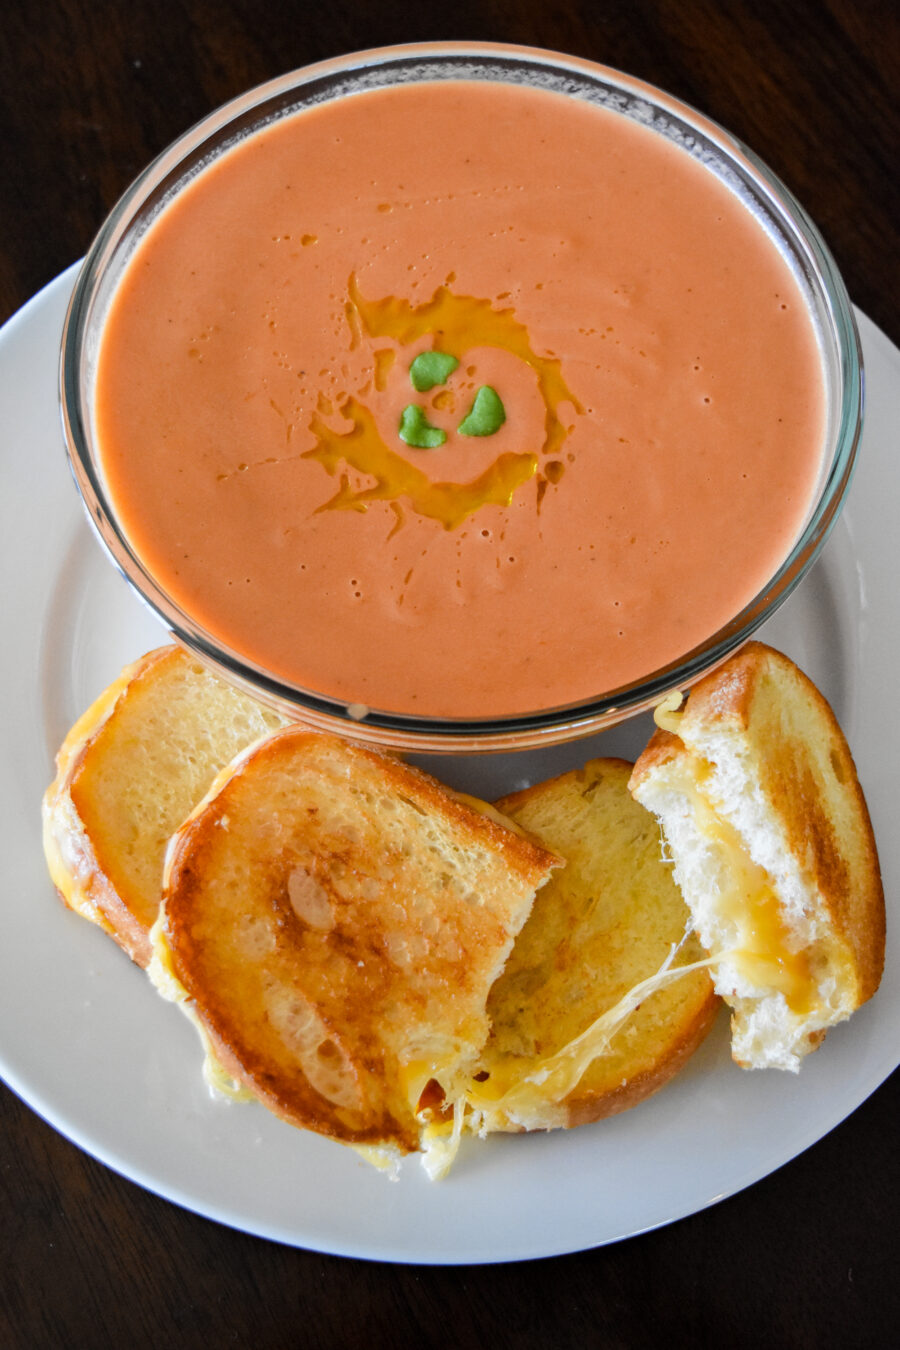 Delicious Homemade Creamy Tomato Basil Soup